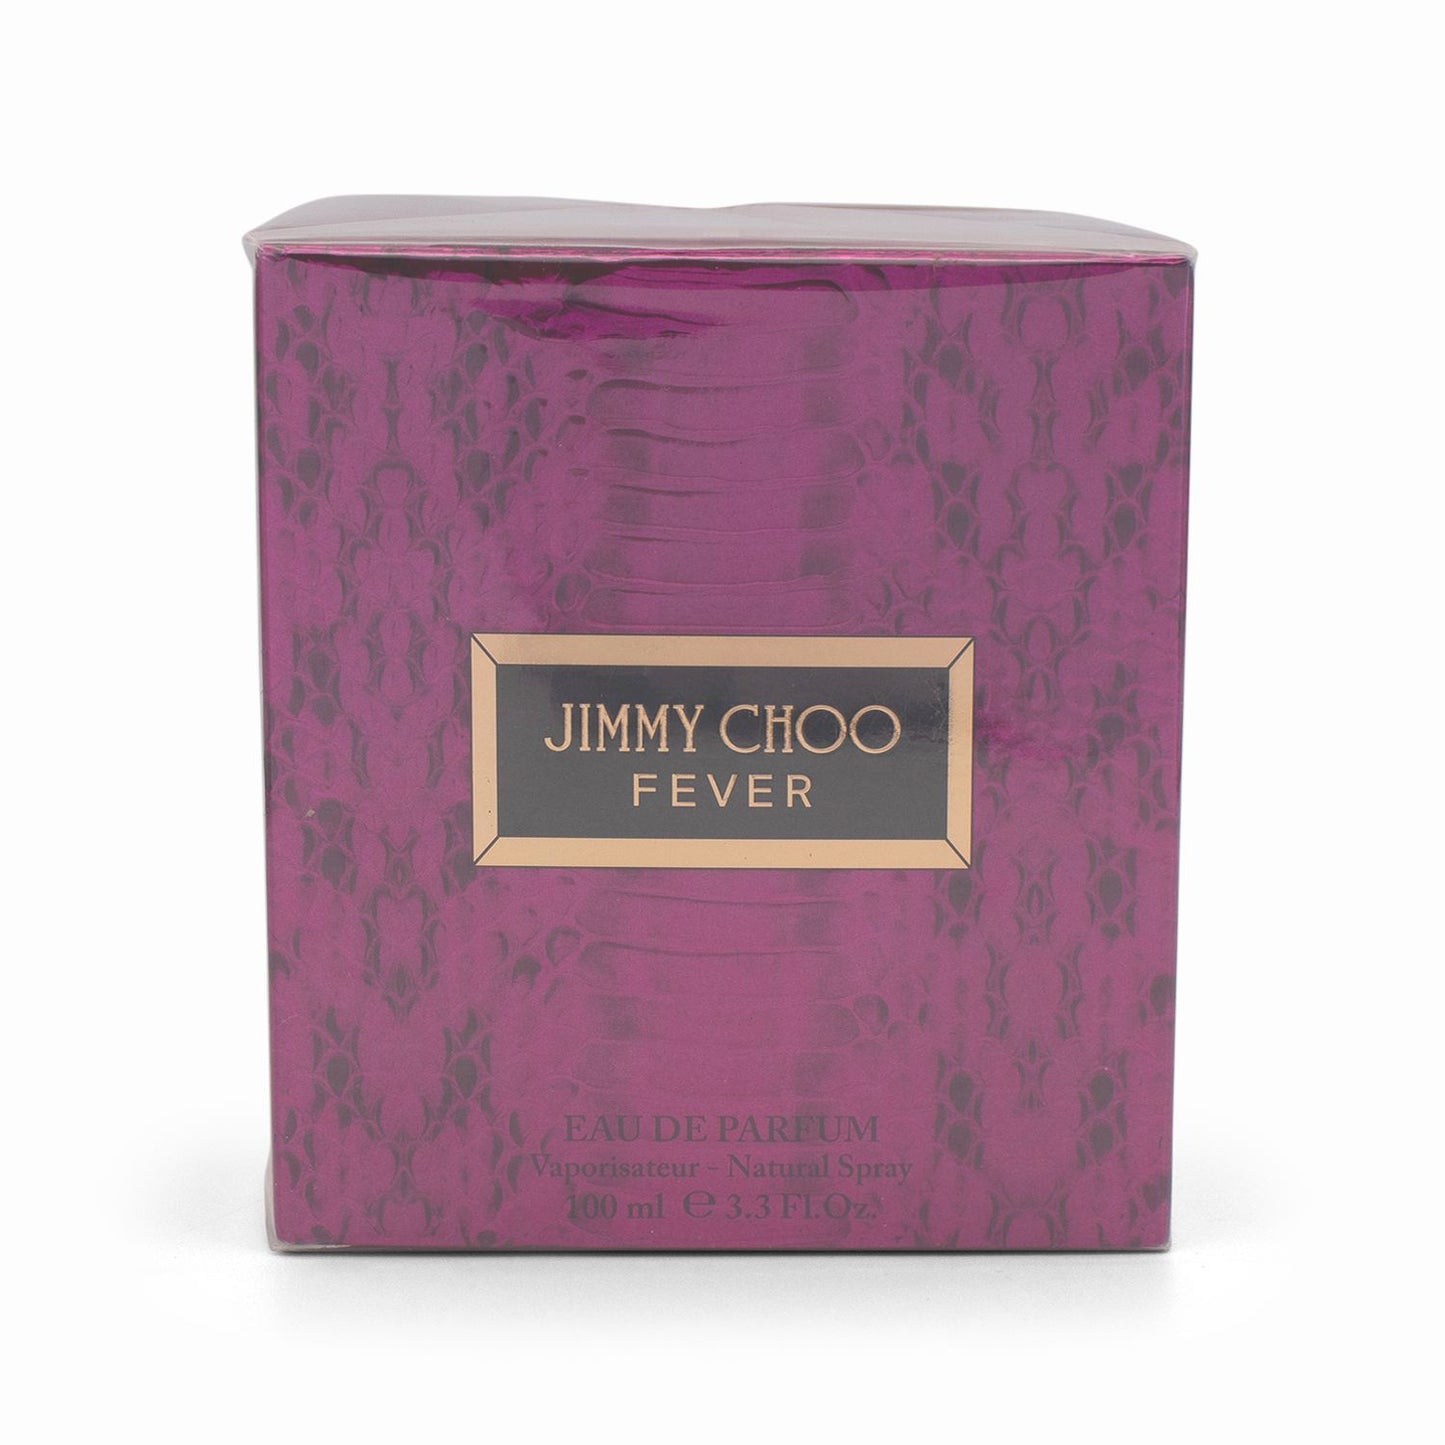 JIMMY CHOO Fever Eau de Parfum 100ml - Imperfect Box